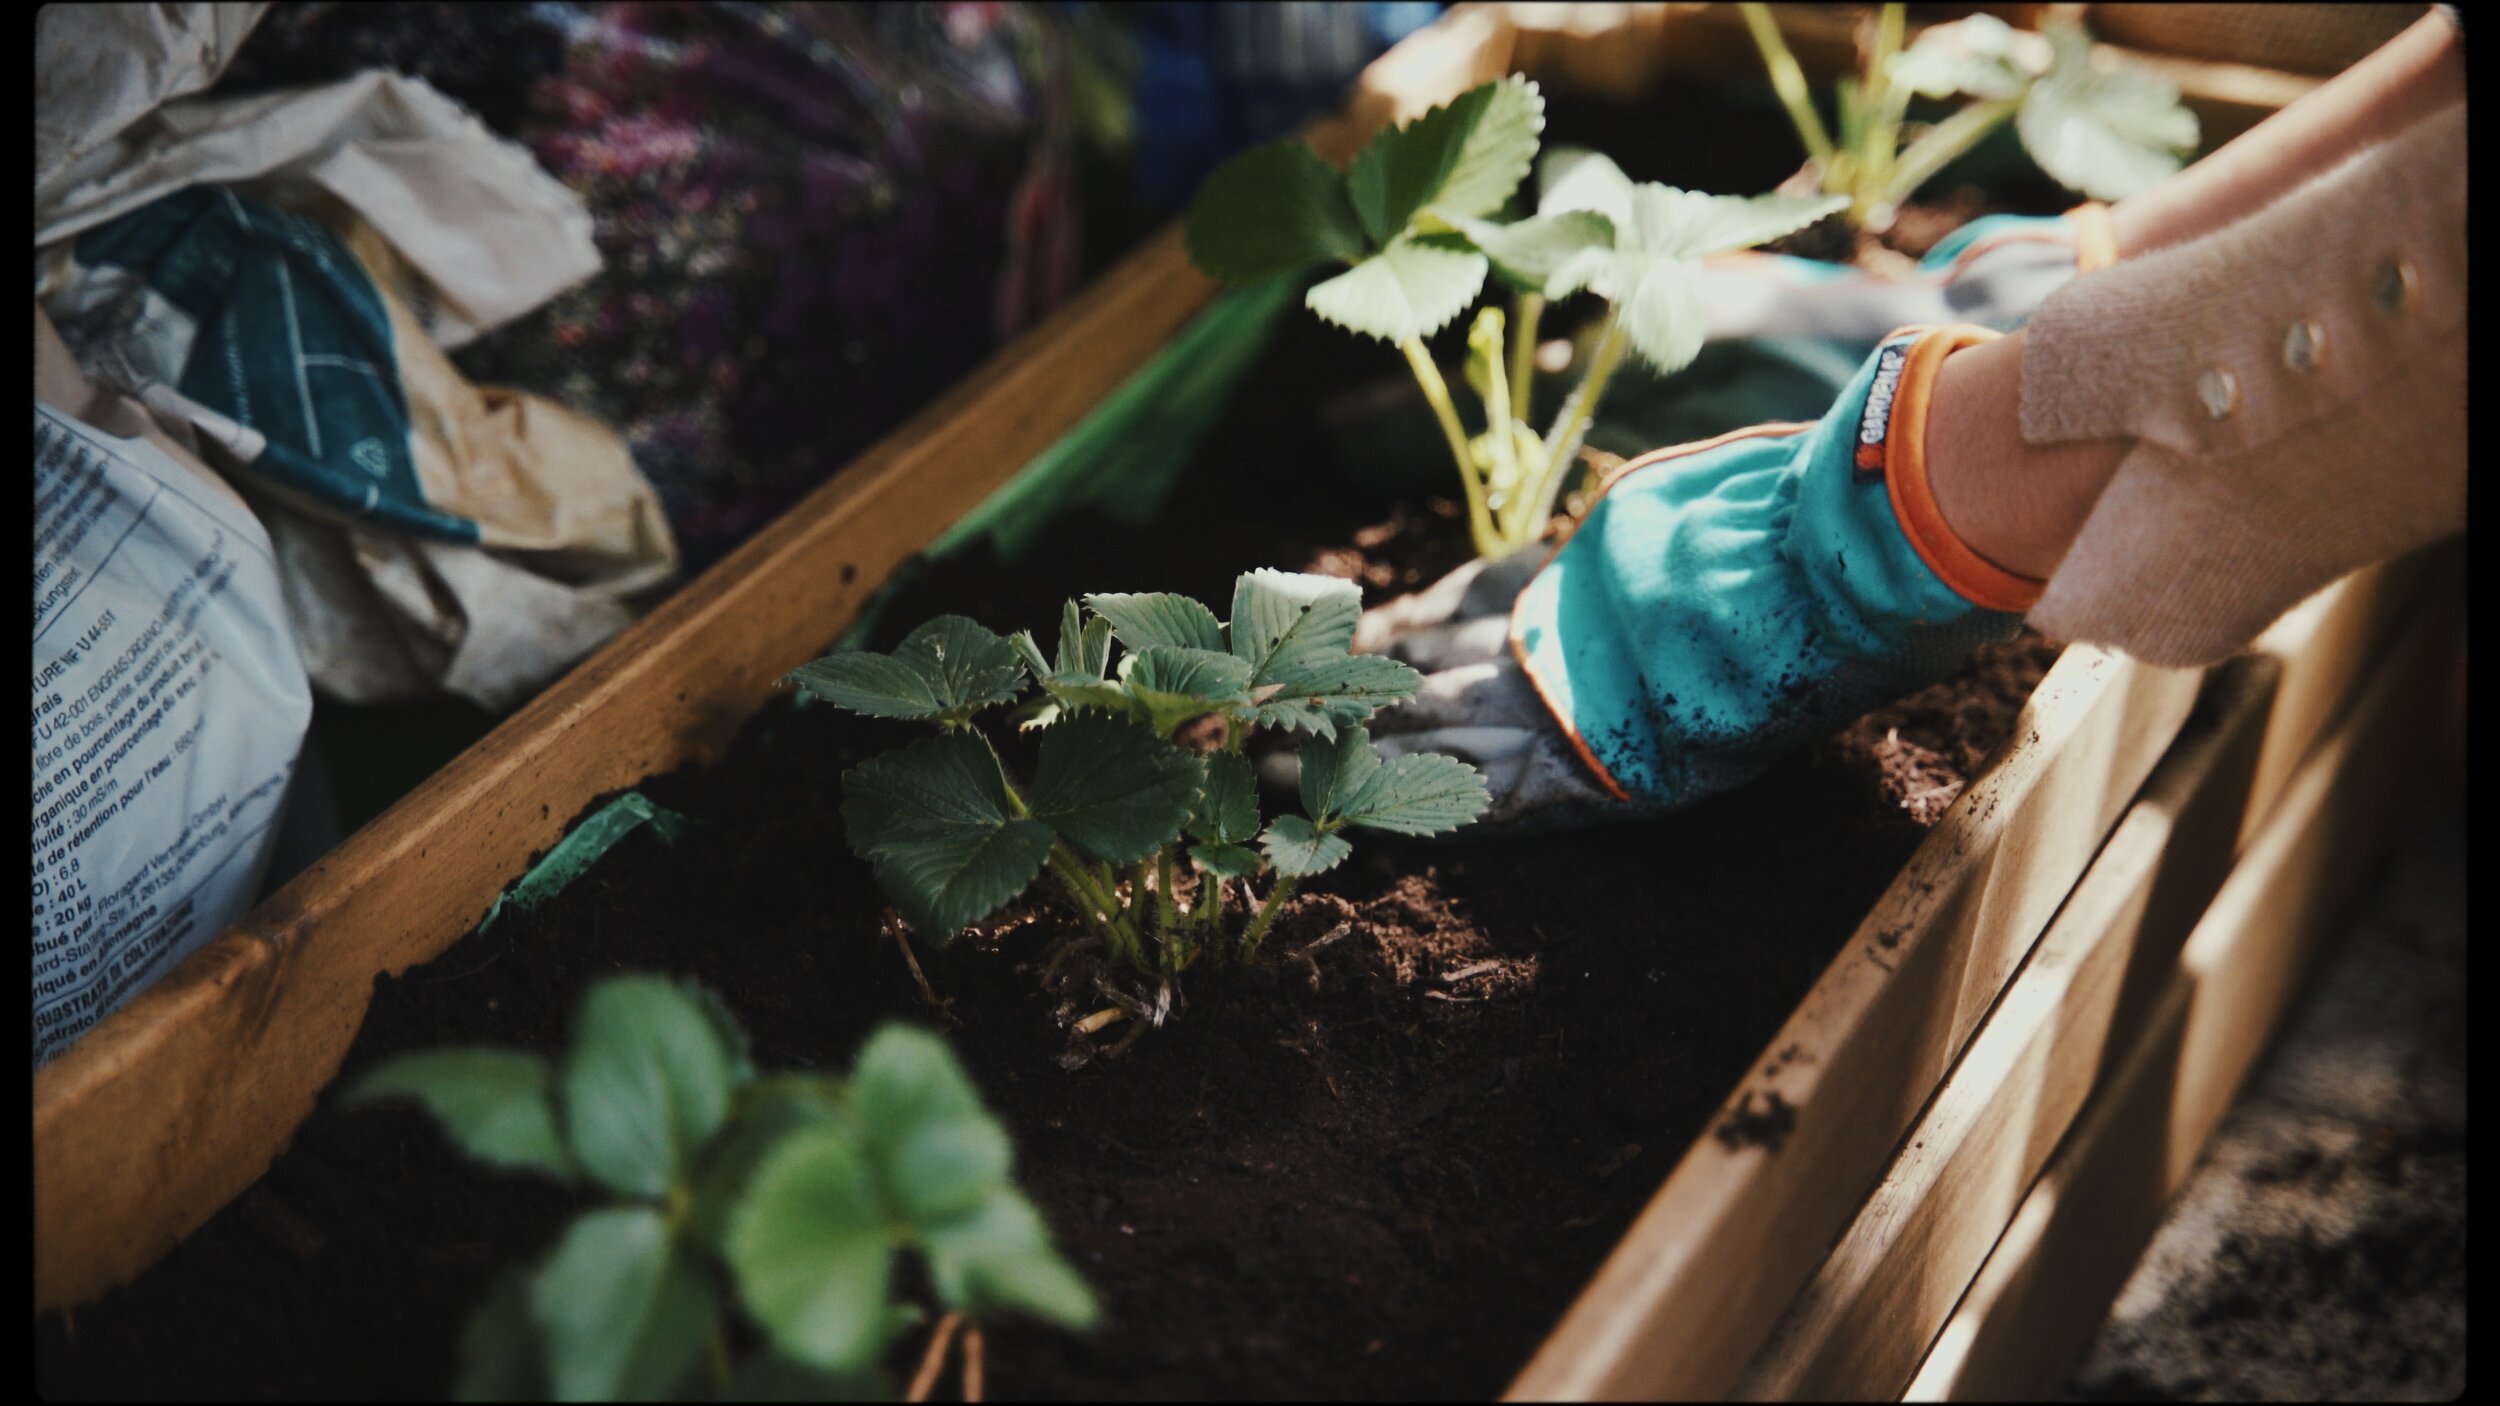 Vườn rau ban công là giải pháp sống xanh và tiết kiệm trên không gian nhỏ. Bạn có thể trồng những loại rau sạch và an toàn tại nhà của mình. Vườn rau ban công cũng mang đến một không gian xanh tươi, giúp bạn giảm stress và tạo cảm giác thư giãn khi ngắm nhìn những bông hoa và cây cối.